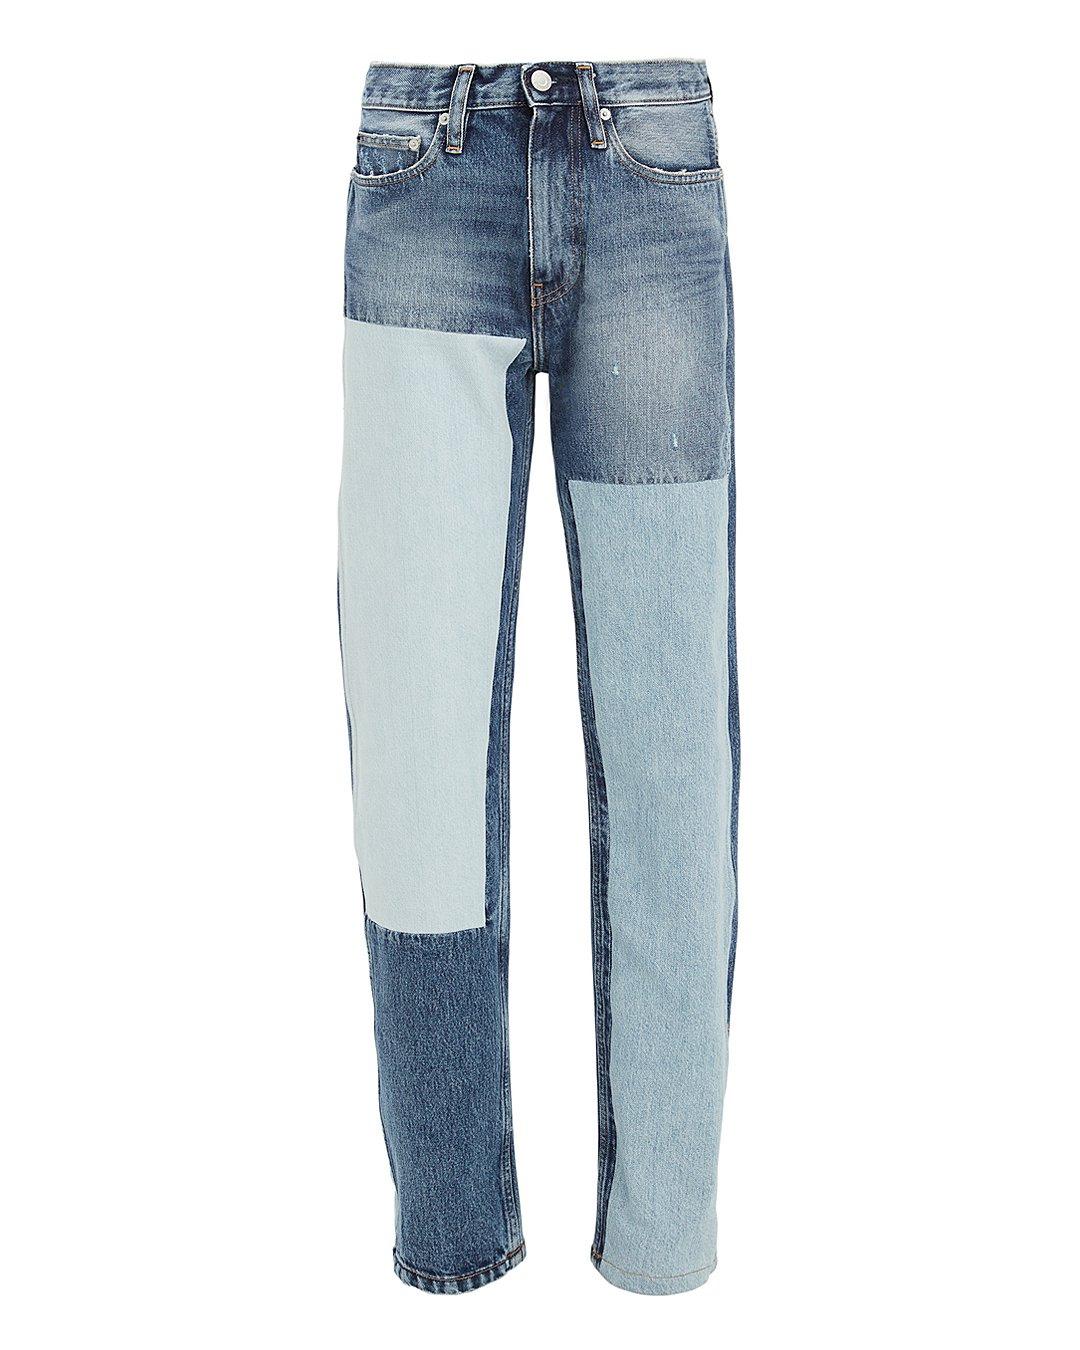 calvin klein jeans high rise straight leg jean